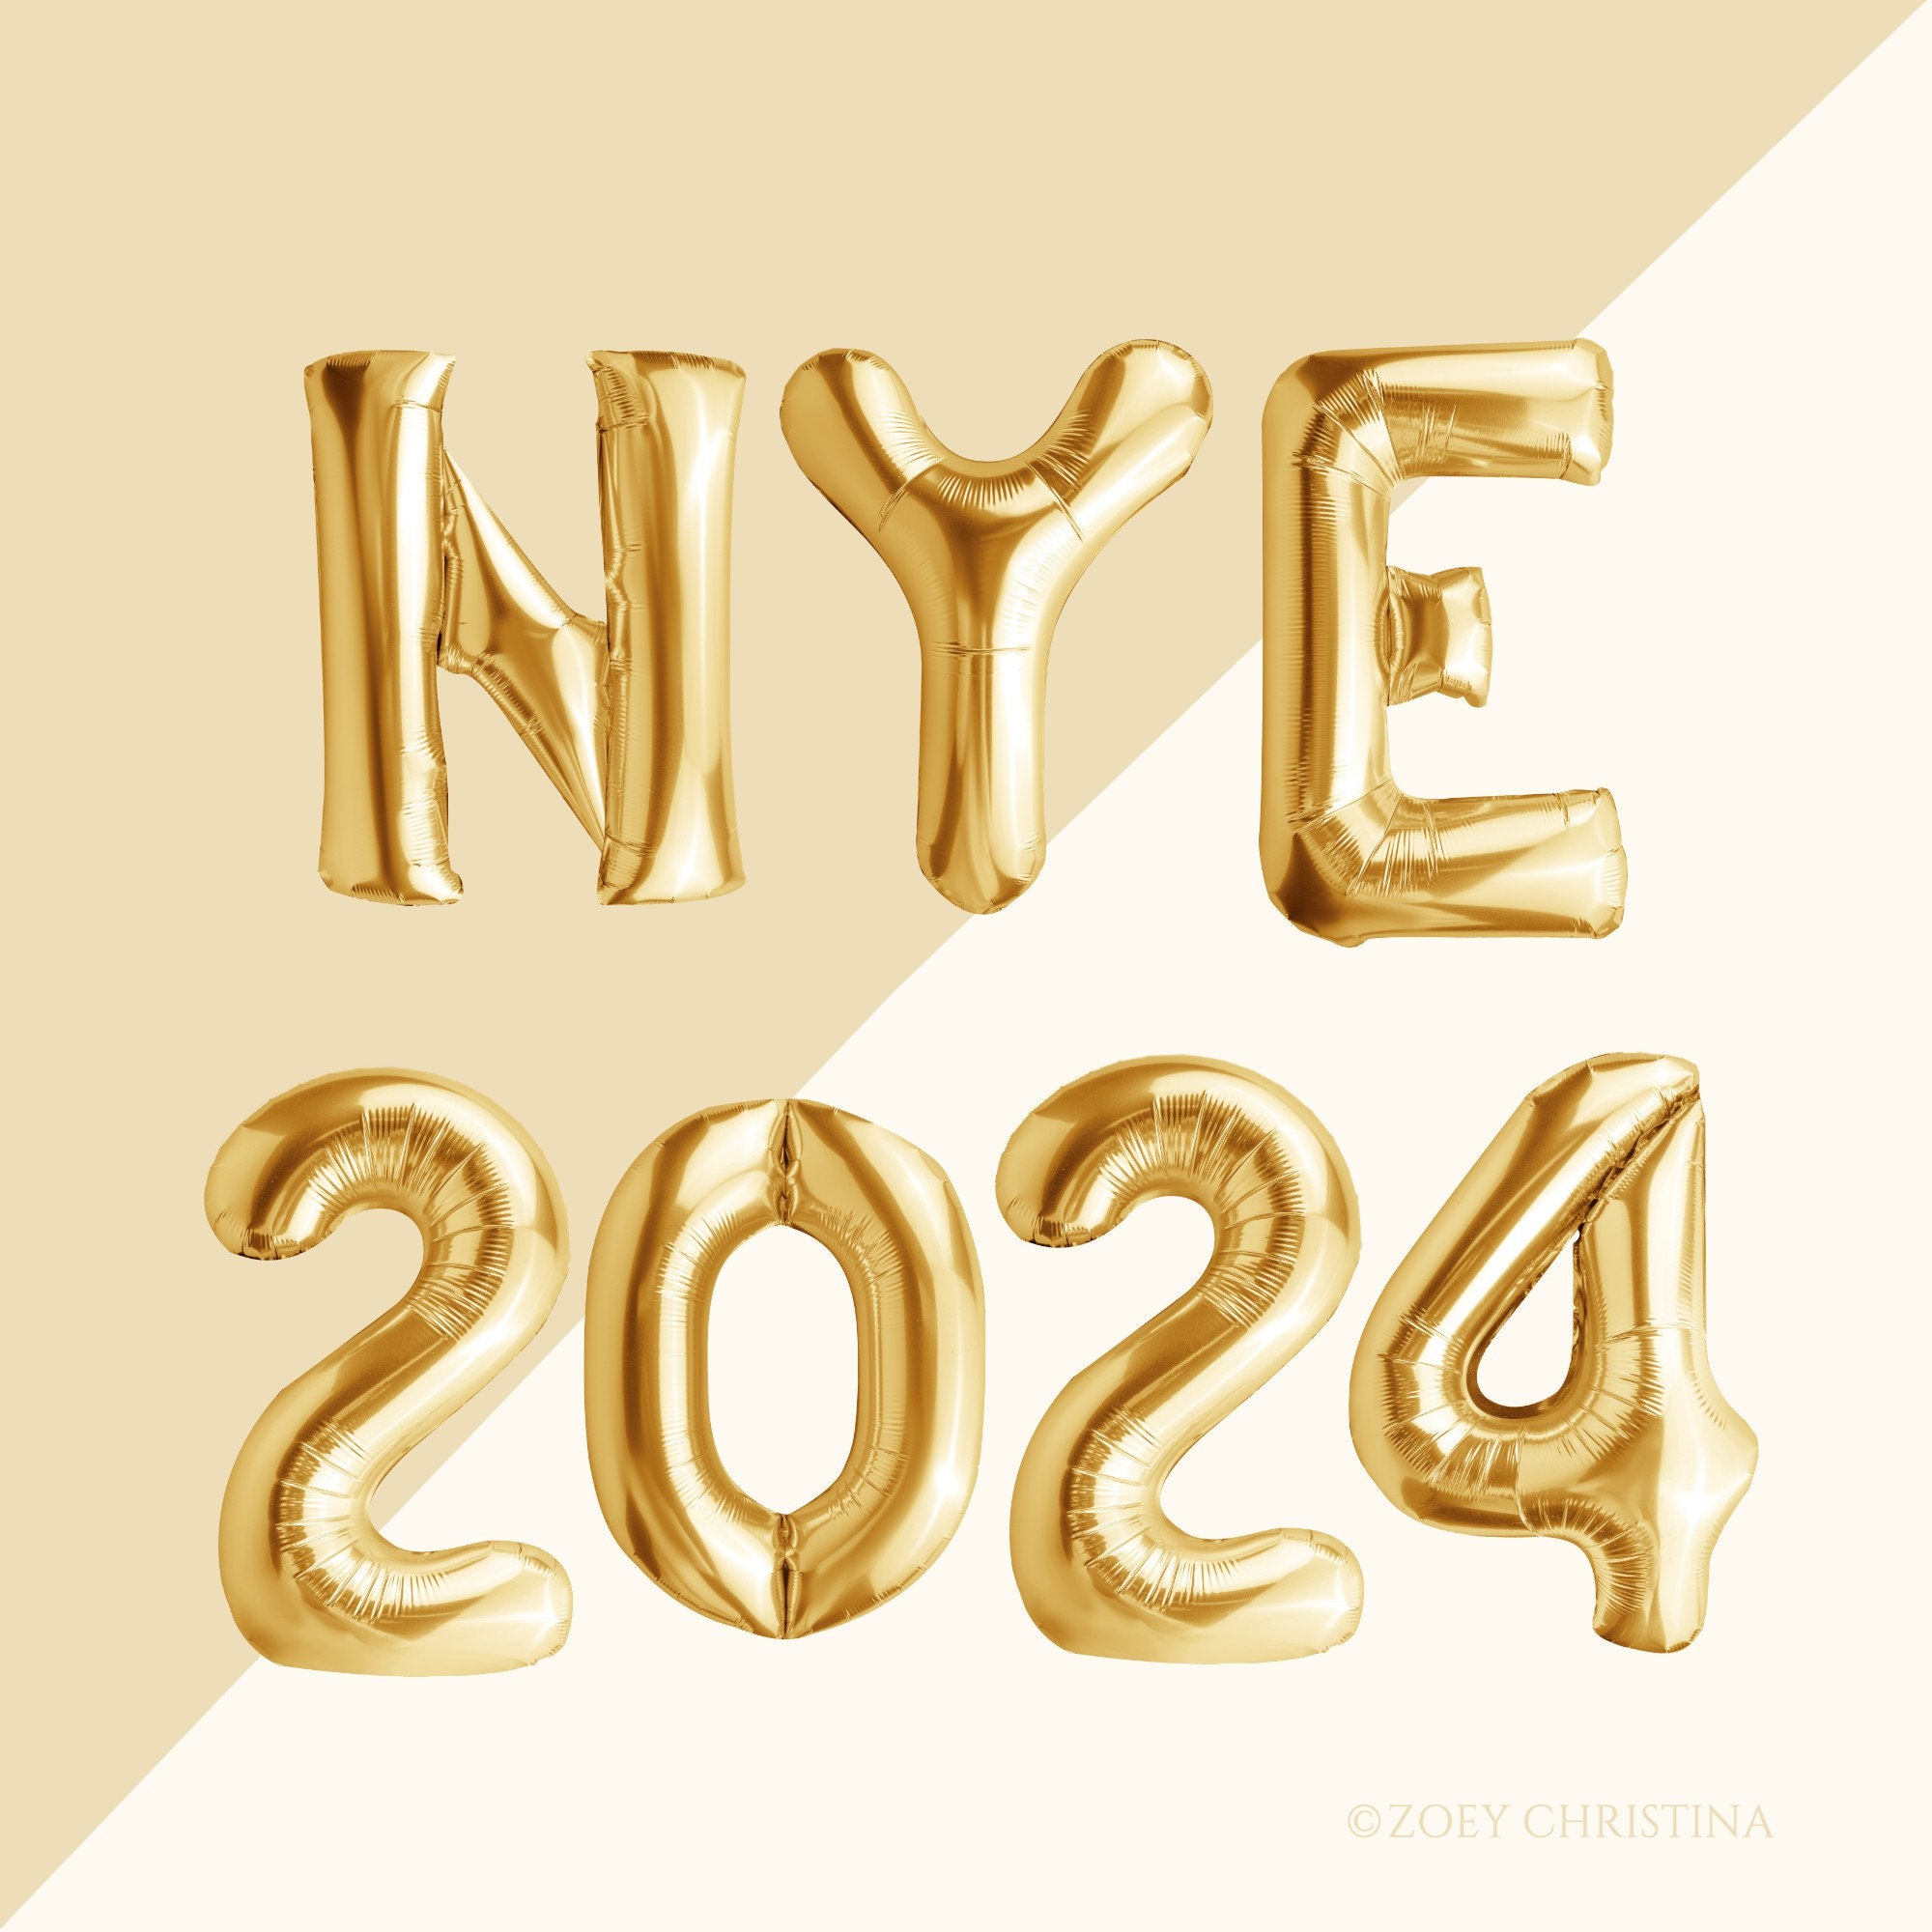 Acheter Lunettes de décoration de fête du nouvel an 2024